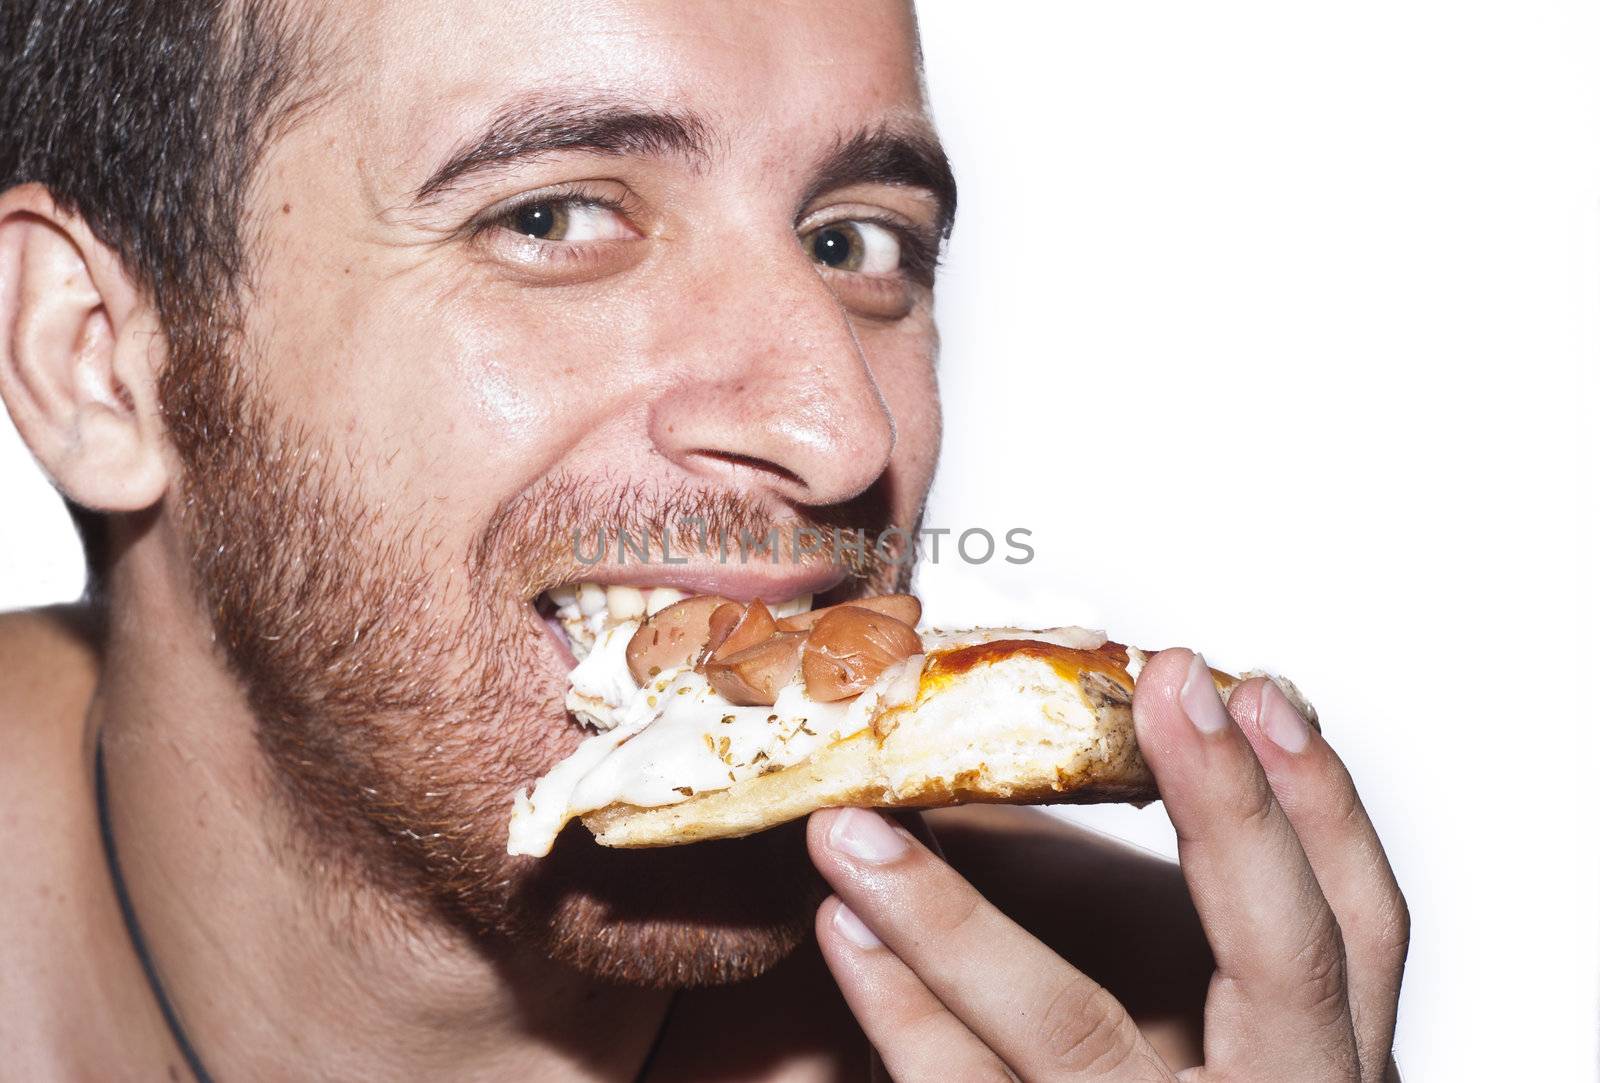 A man eating Pizza by gandolfocannatella